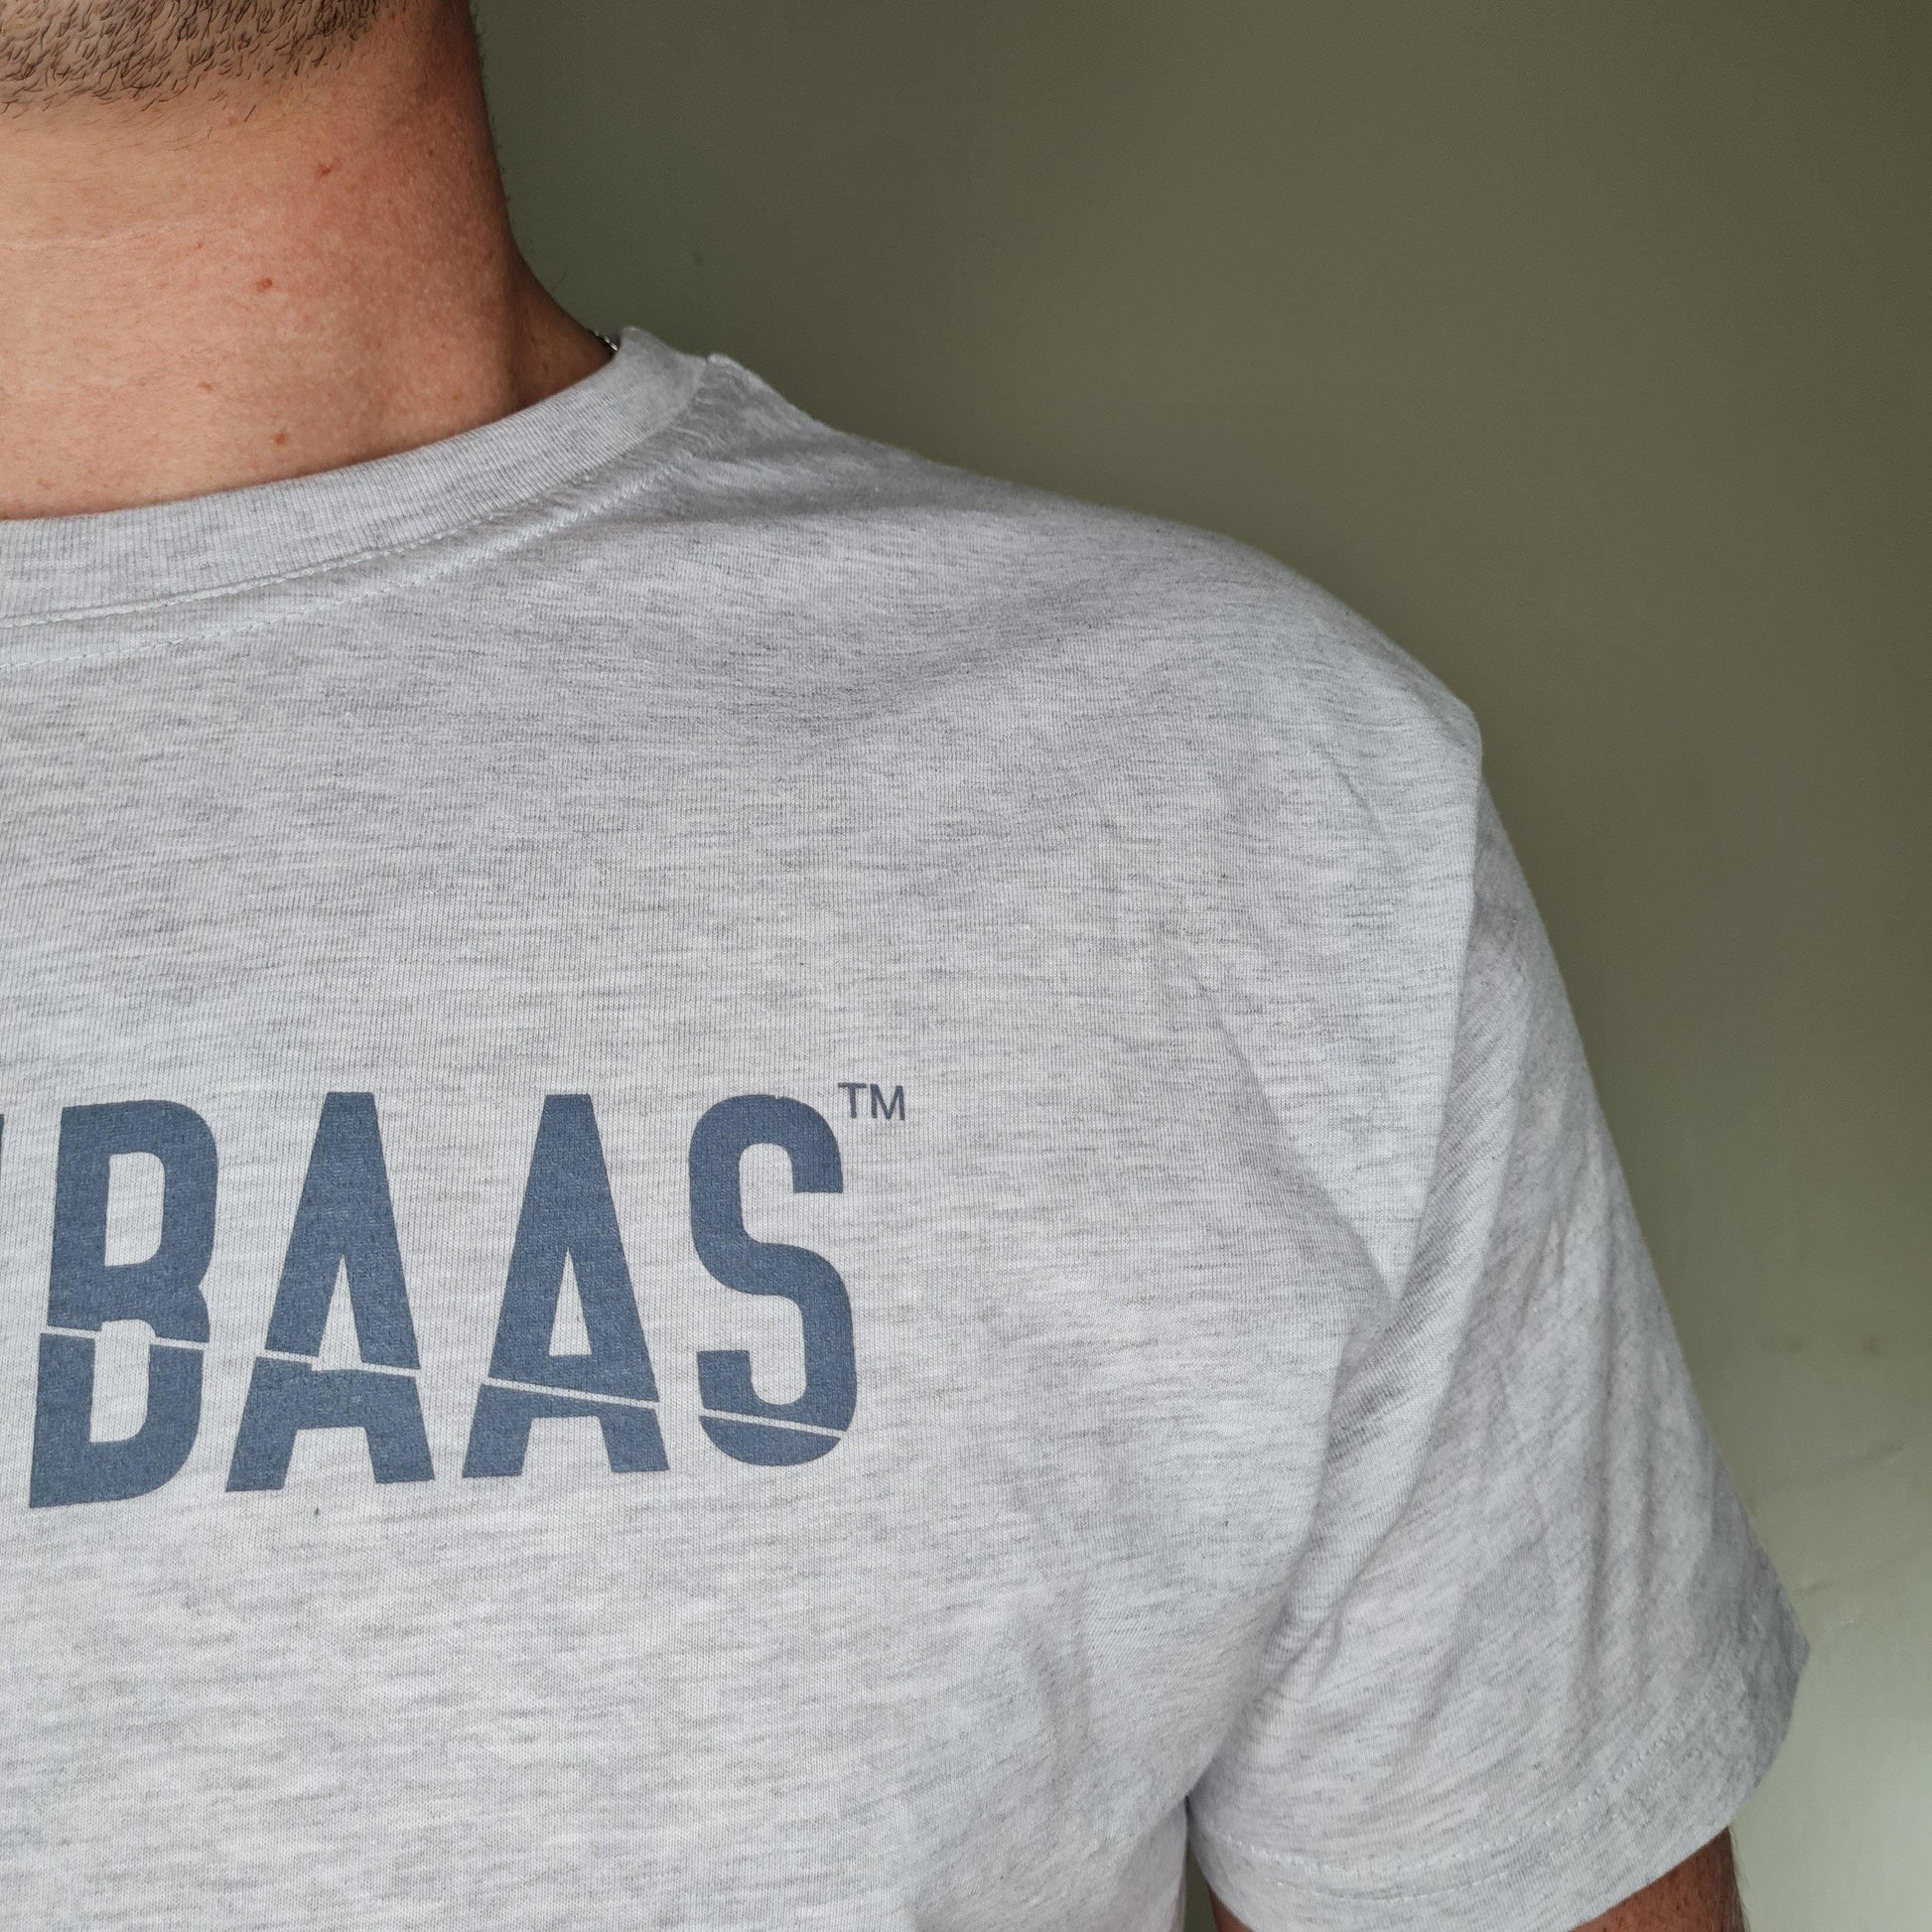 The Proud Baas Mens T-Shirt - BraaiBaas